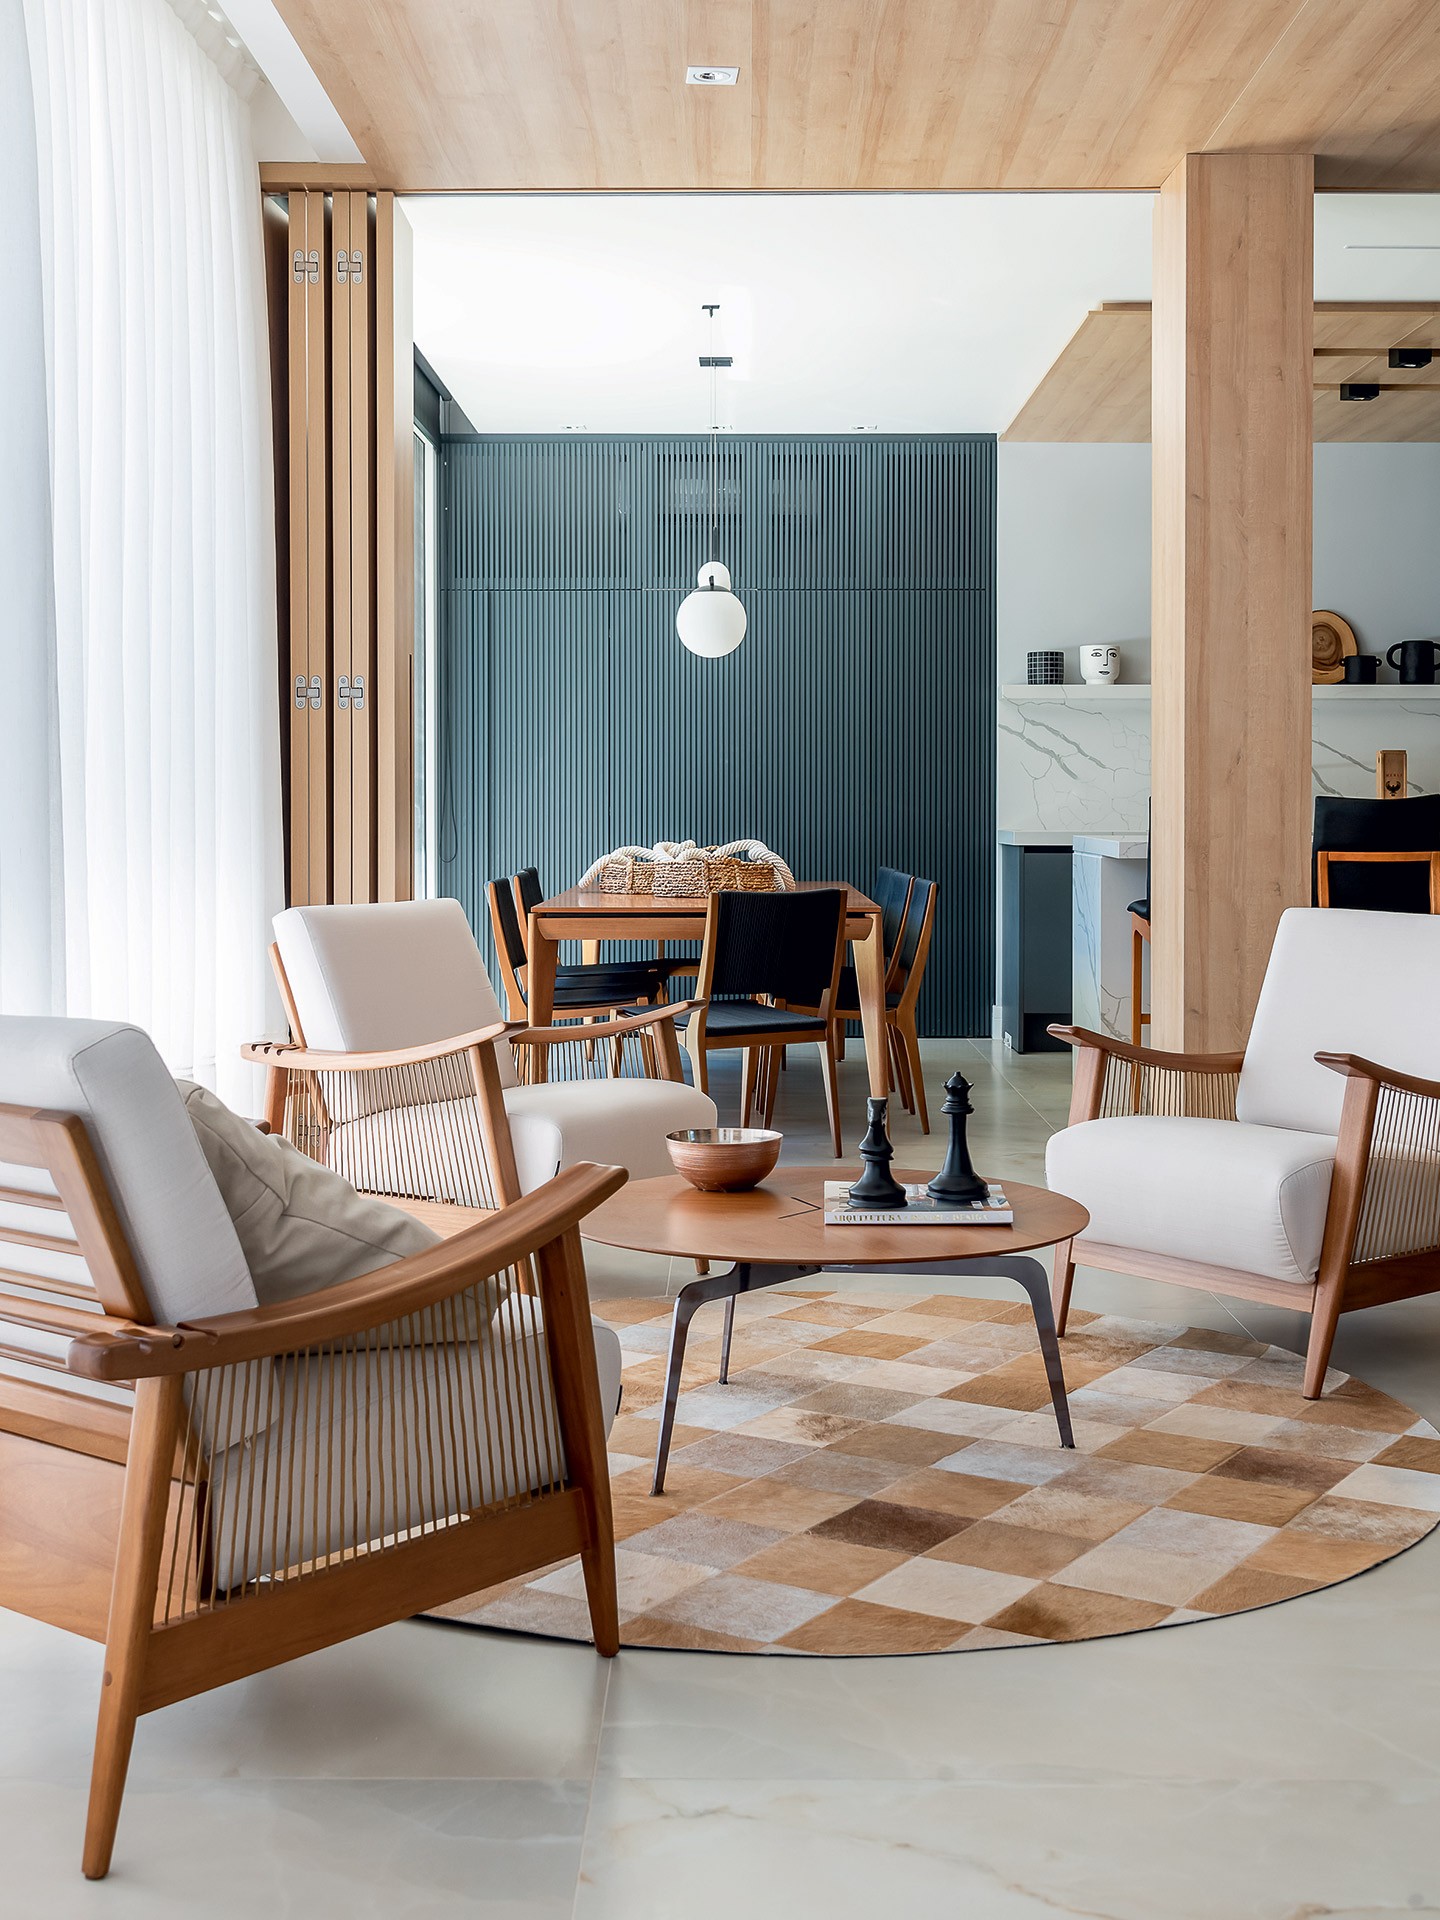 Casa de 400 m² tem integração e madeira como protagonista (Foto: Wesley Diego Emes)